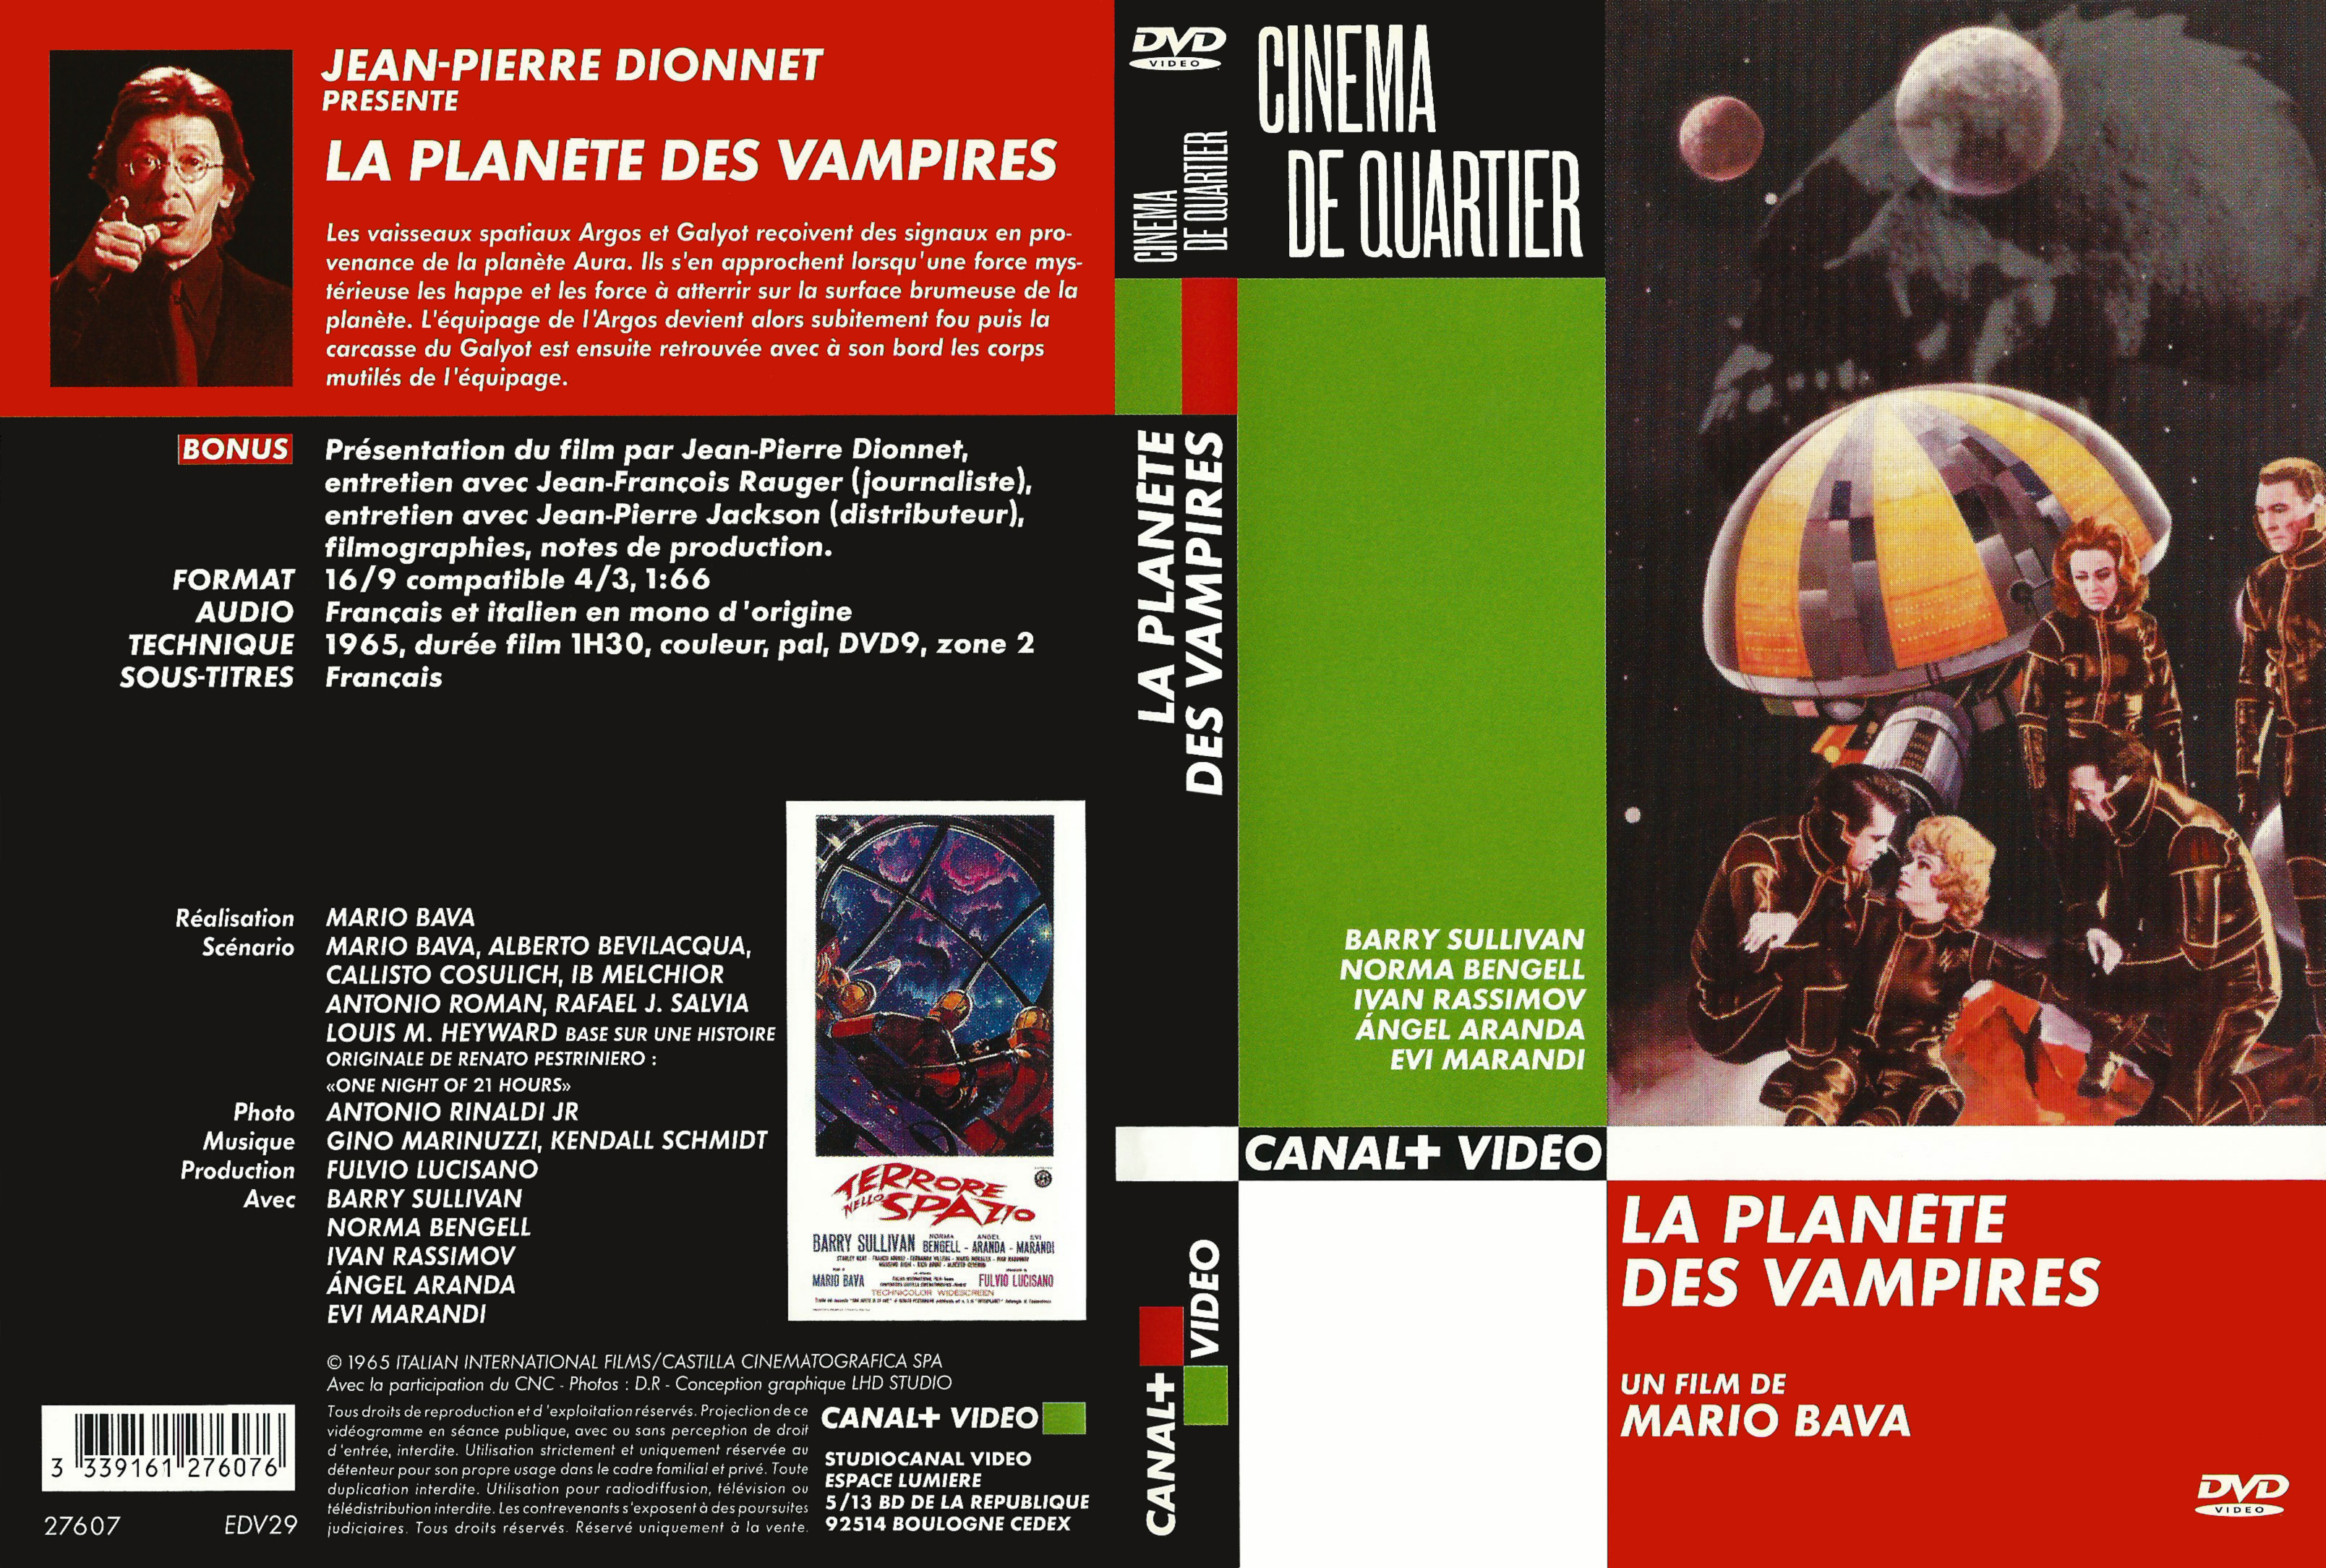 Jaquette DVD La Planete des vampires